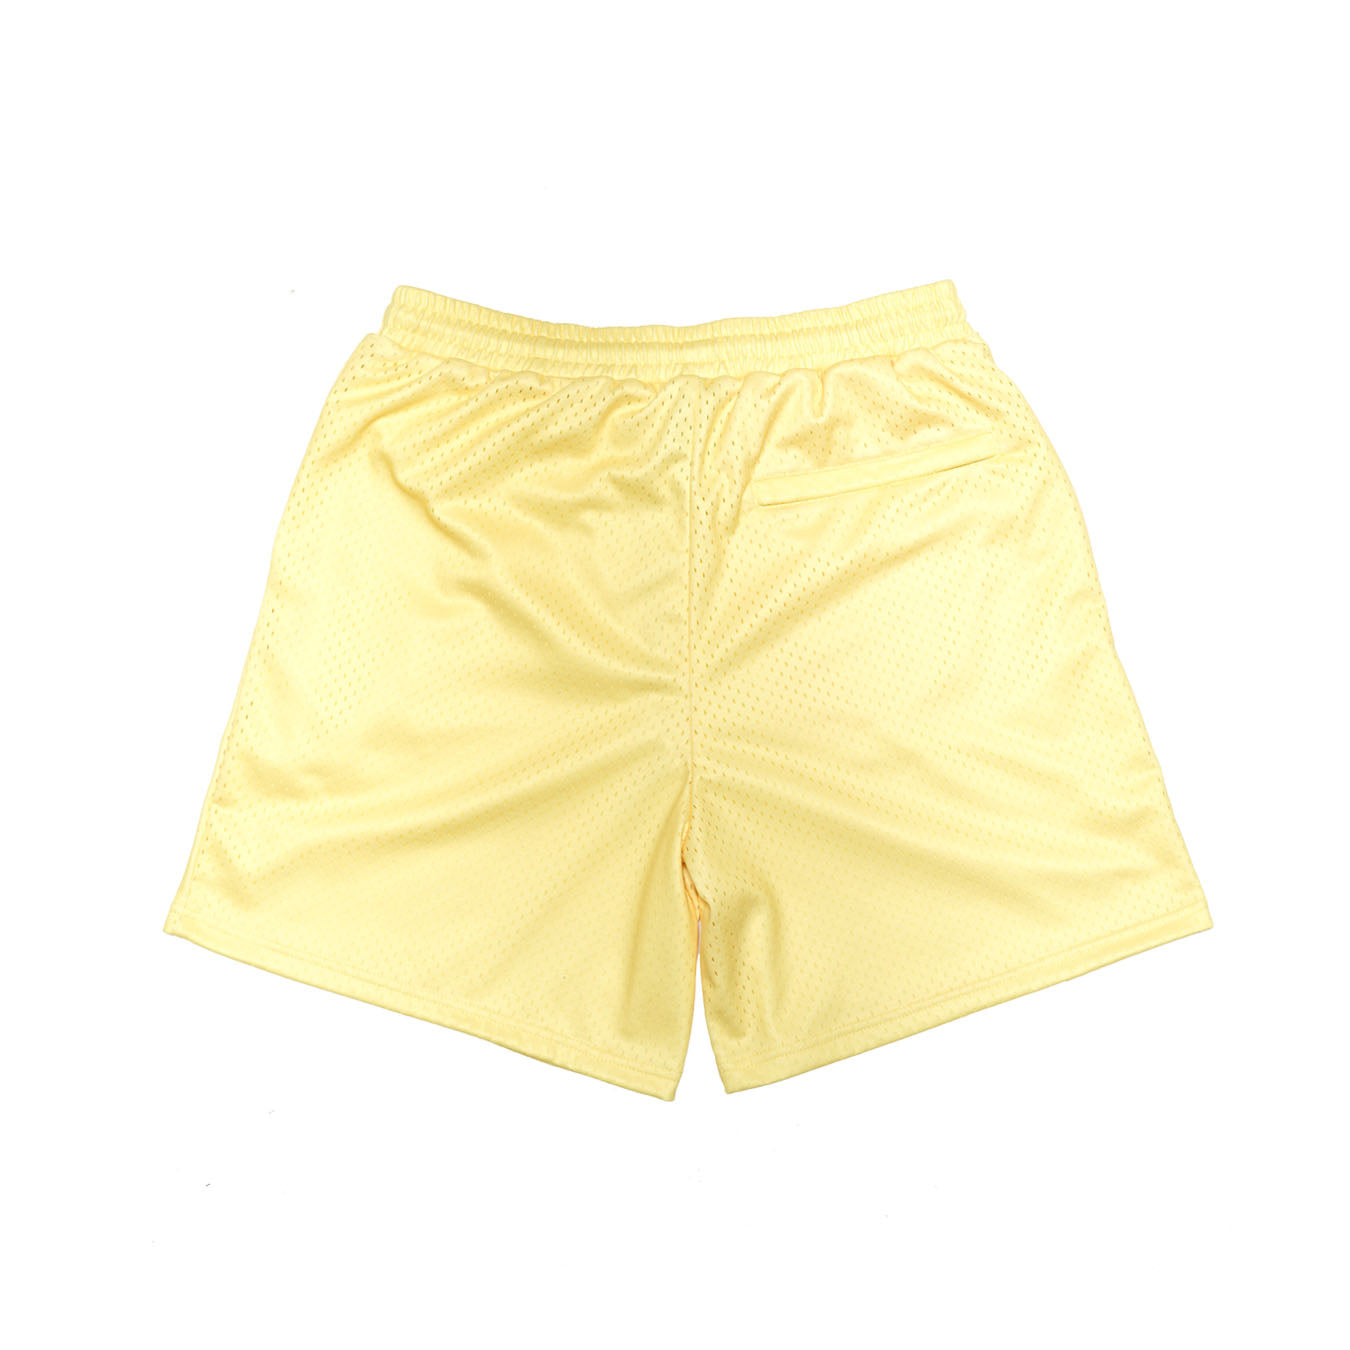 Shorts - Cream Yellow